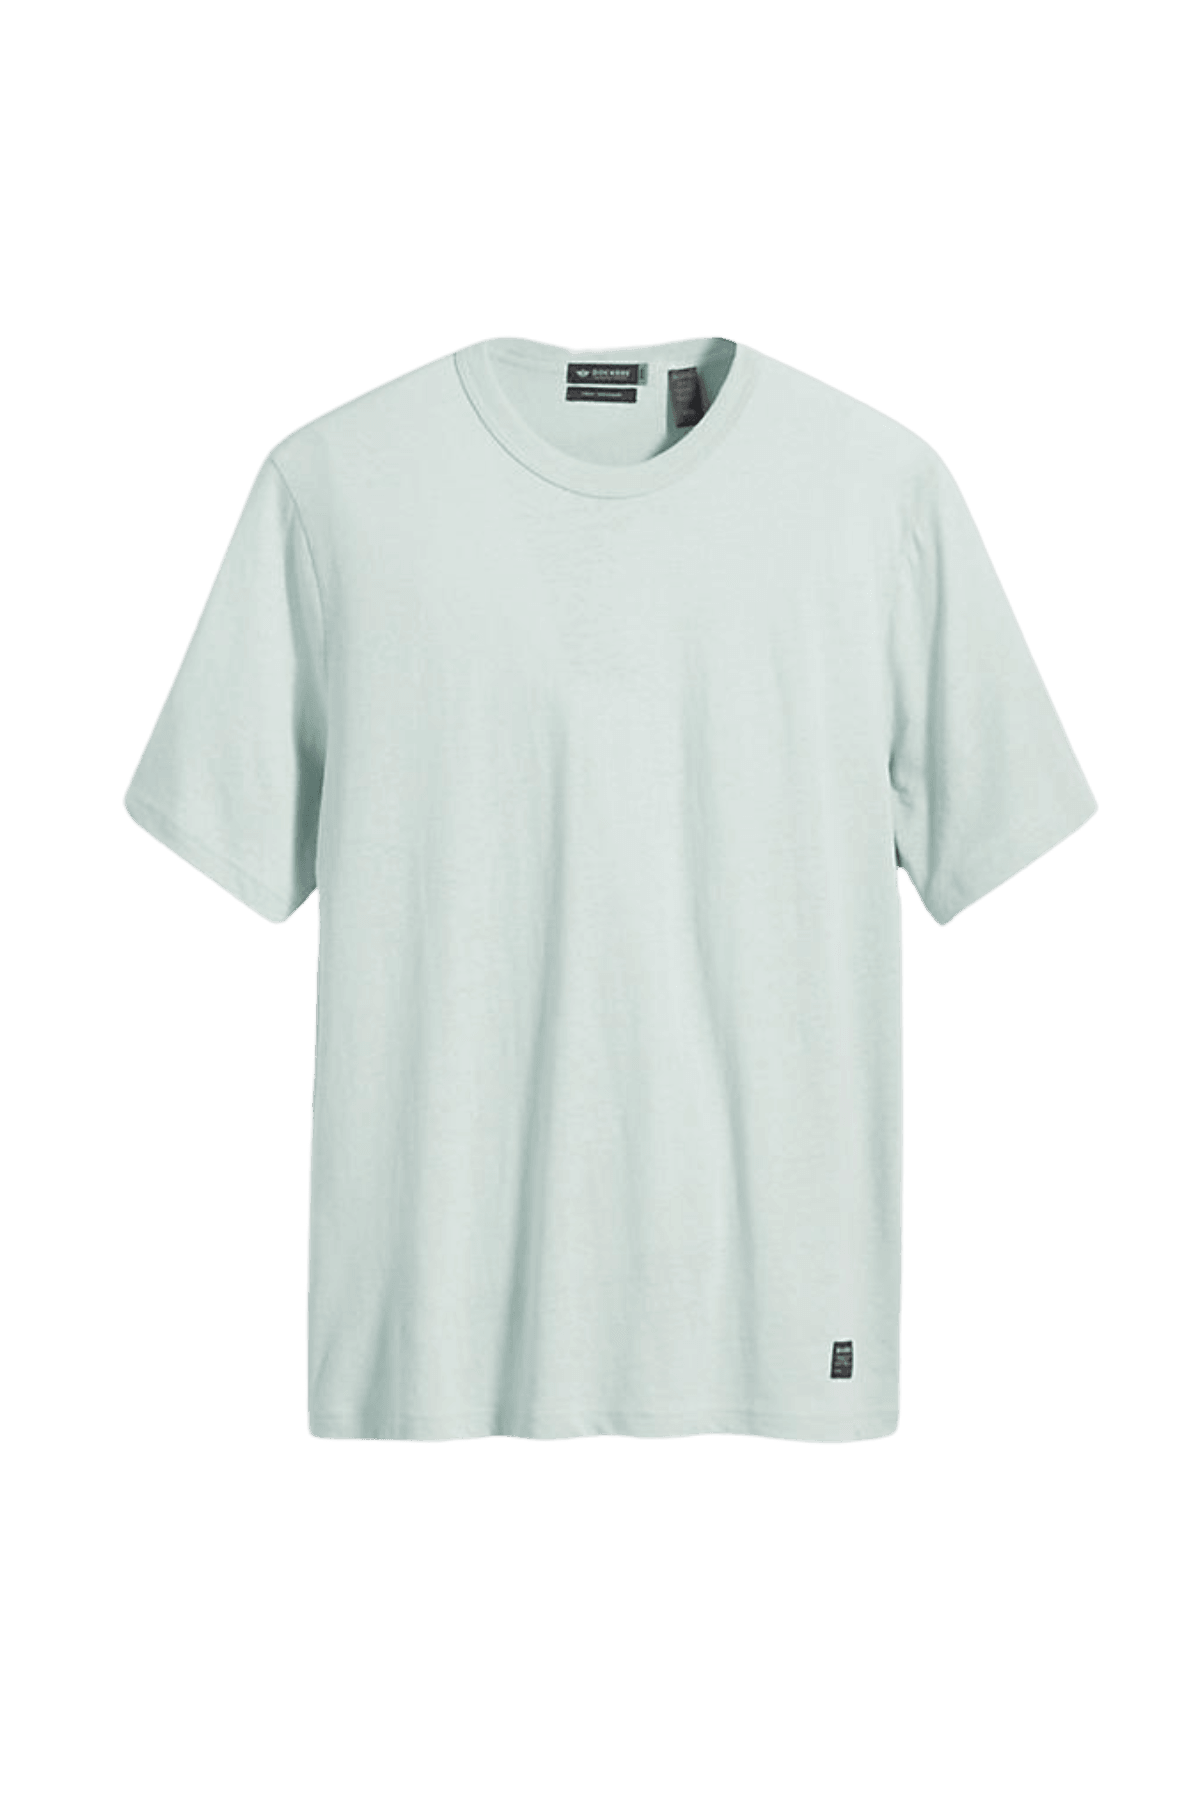 Camiseta Dockers® de hombre Regular Harbor Gray - ECRU